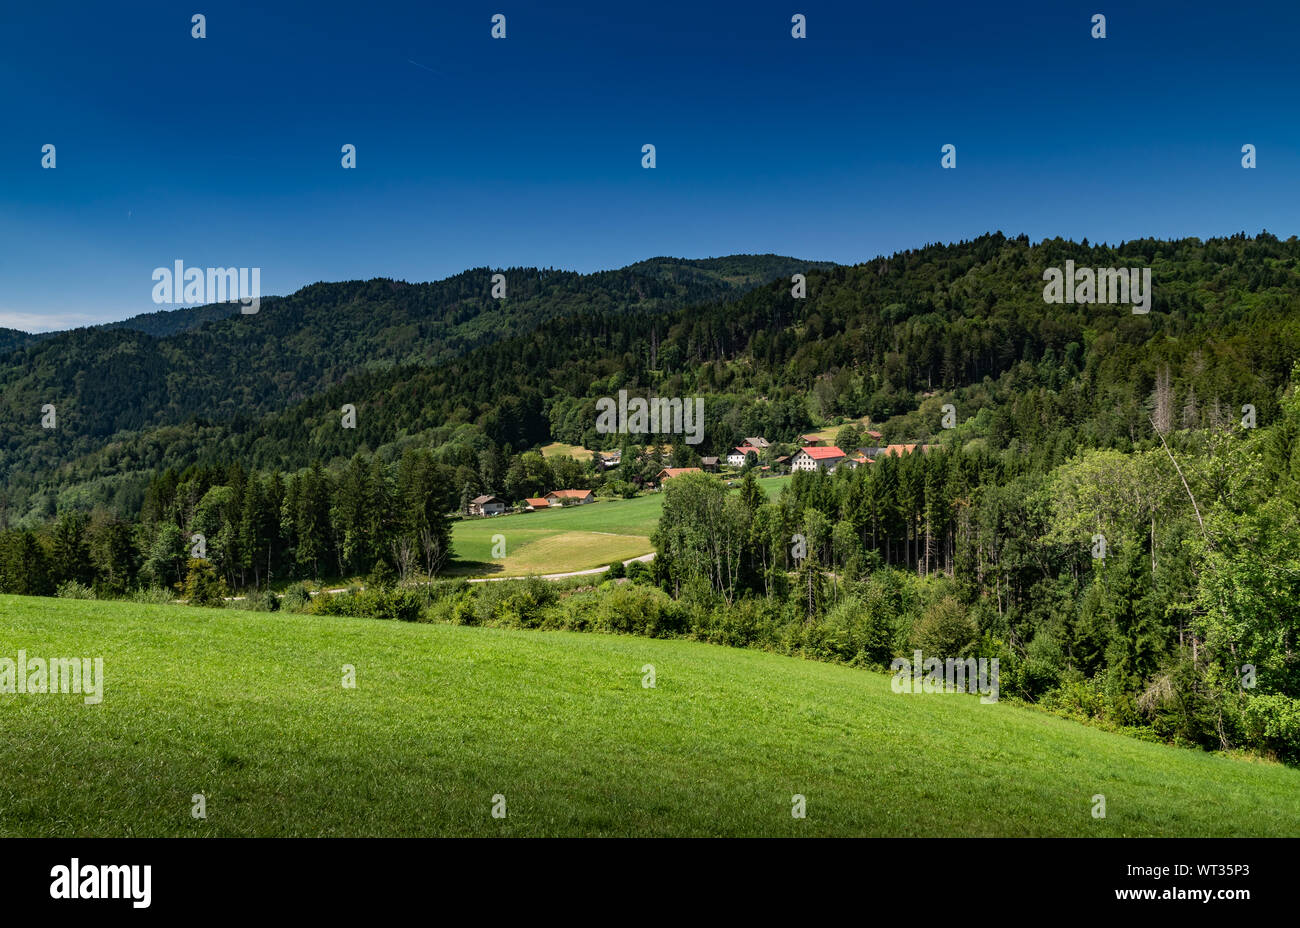 Montaña paisaje de colinas cubiertas de bosques y casas de campo con el cielo azul,focus area en casas de campo.Alta Saboya en Francia. Foto de stock